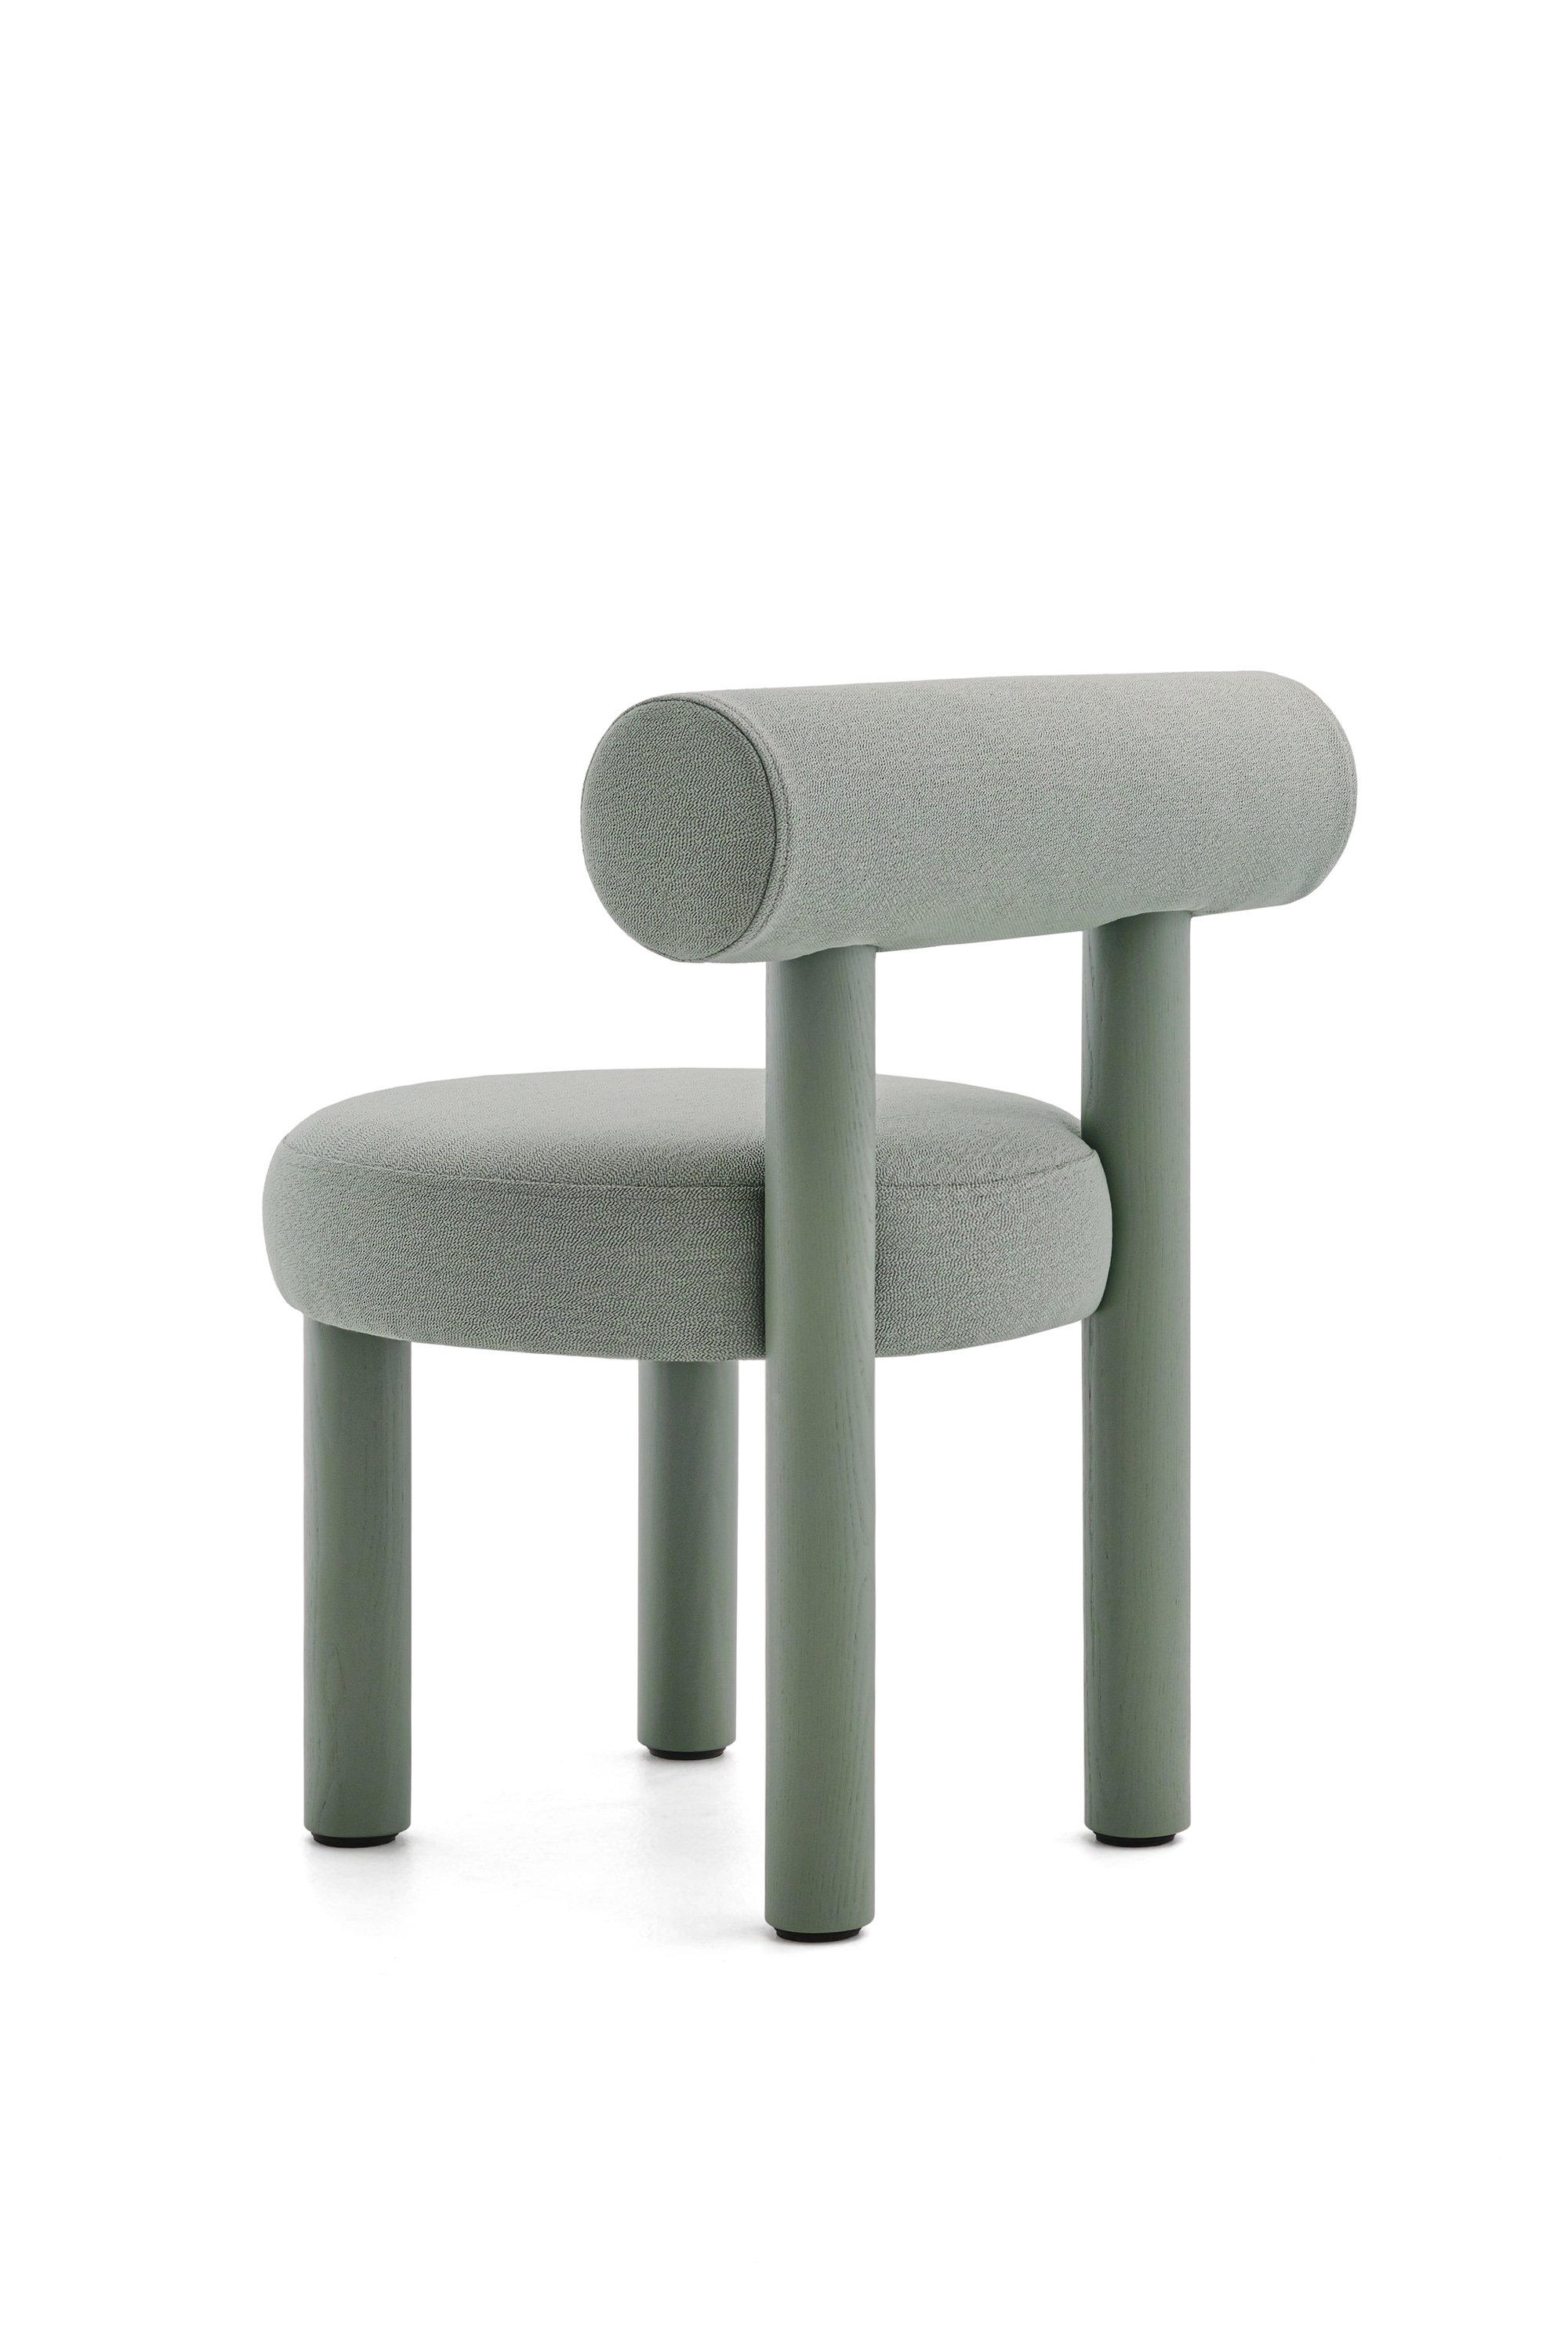 Gropius Chair in Rohi Arco fabrics (2).jpg